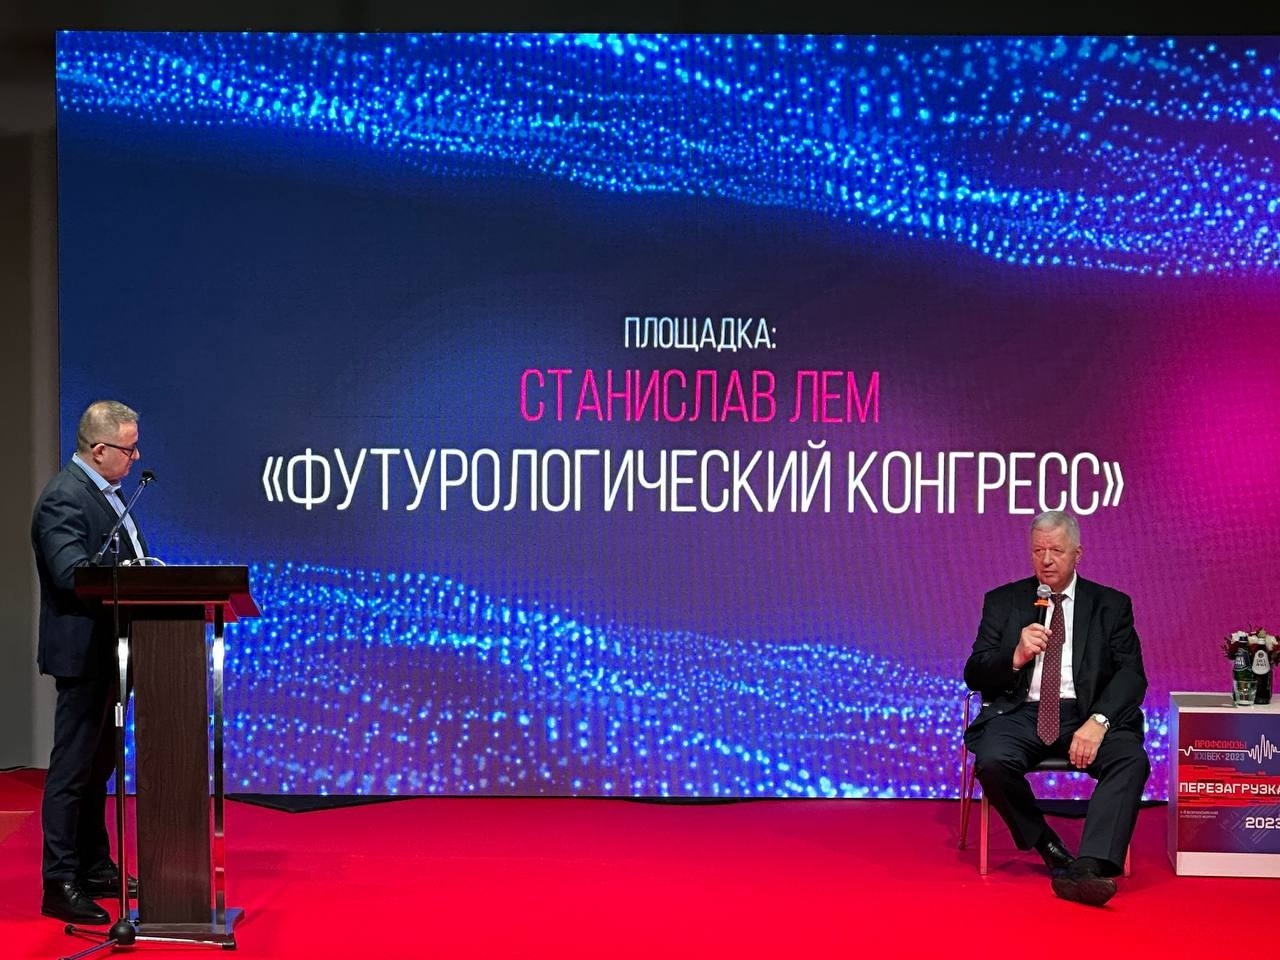 Председатель ФНПР выступил на V Всероссийском интеллект-форуме «Профсоюзы. XXI век. Перезагрузка»